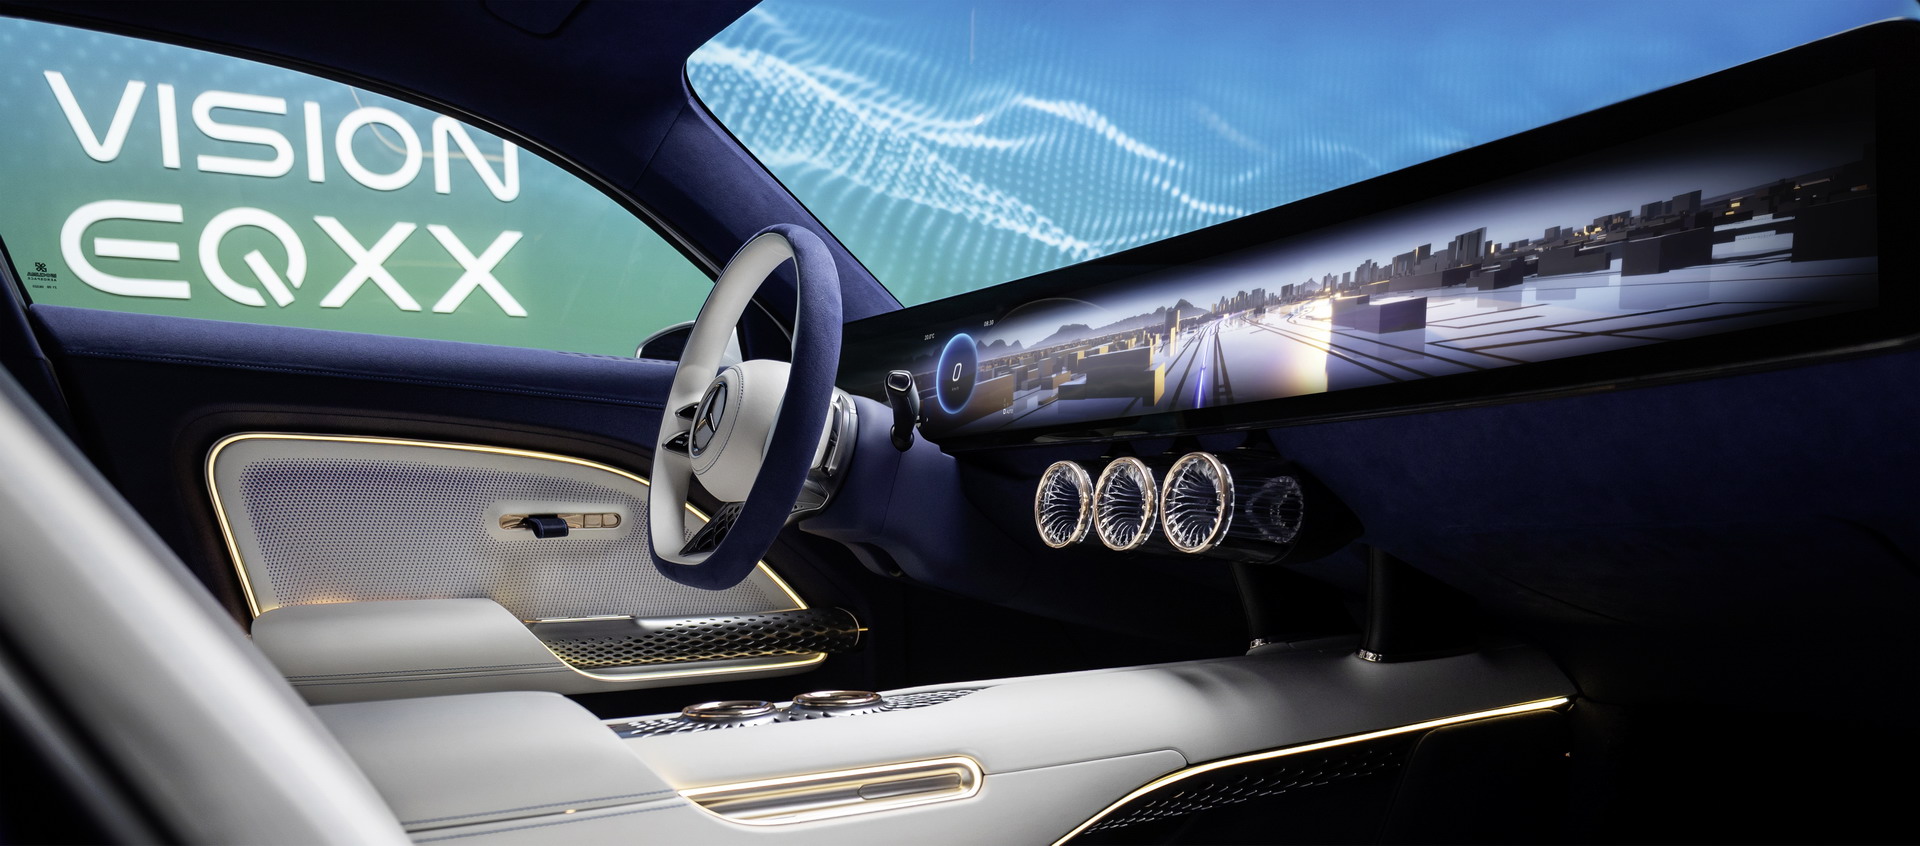 1000 km menziliyle şimdiye kadarki en verimli Mercedes: Vision EQXX